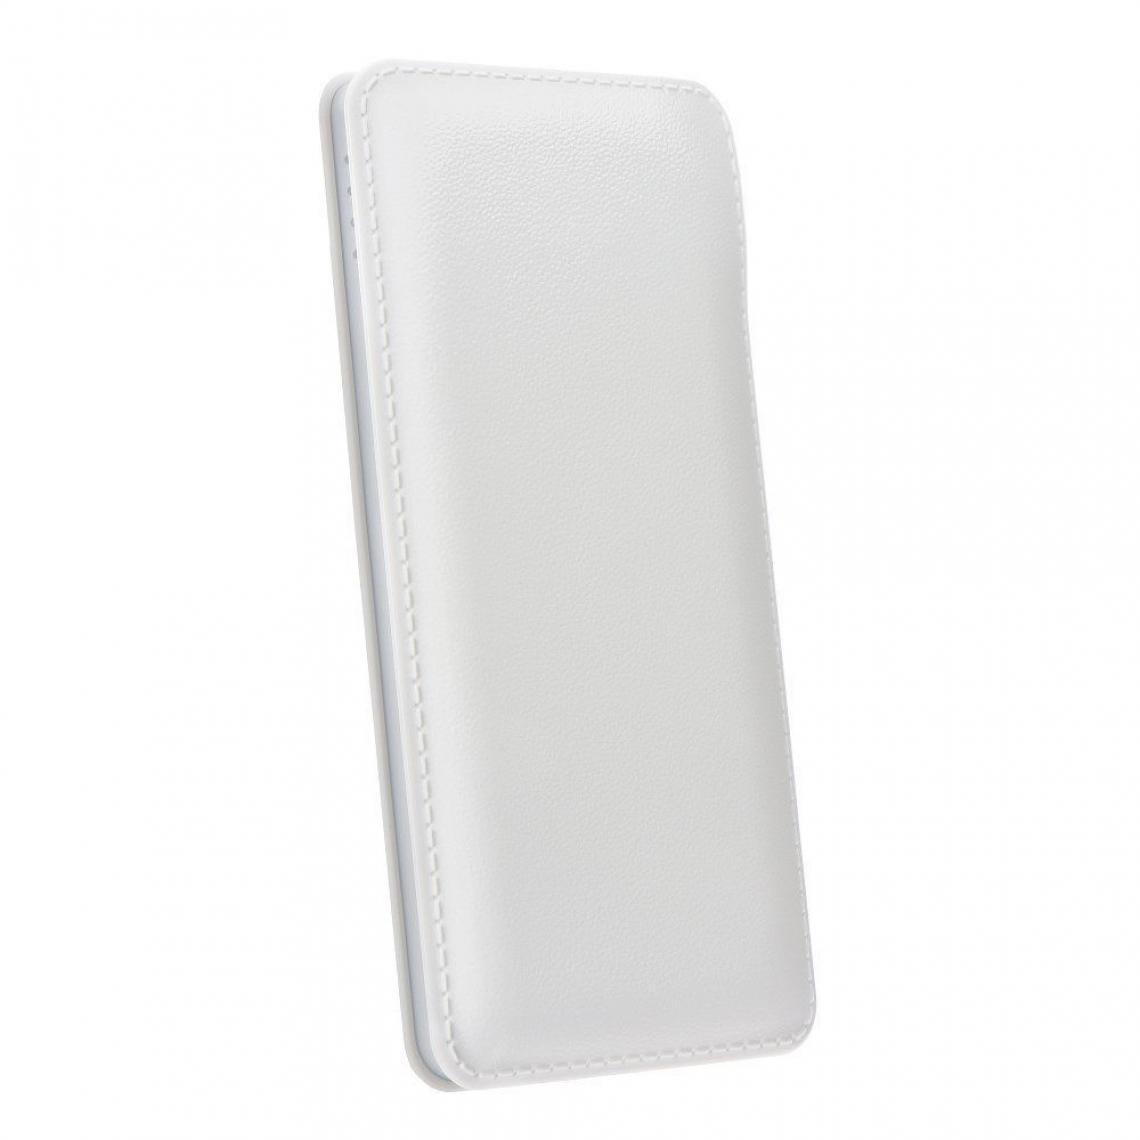 Ozzzo - Chargeur batterie externe 20000 mAh powerbank ozzzo blanc pour comparer prix Kenxinda W50 - Autres accessoires smartphone